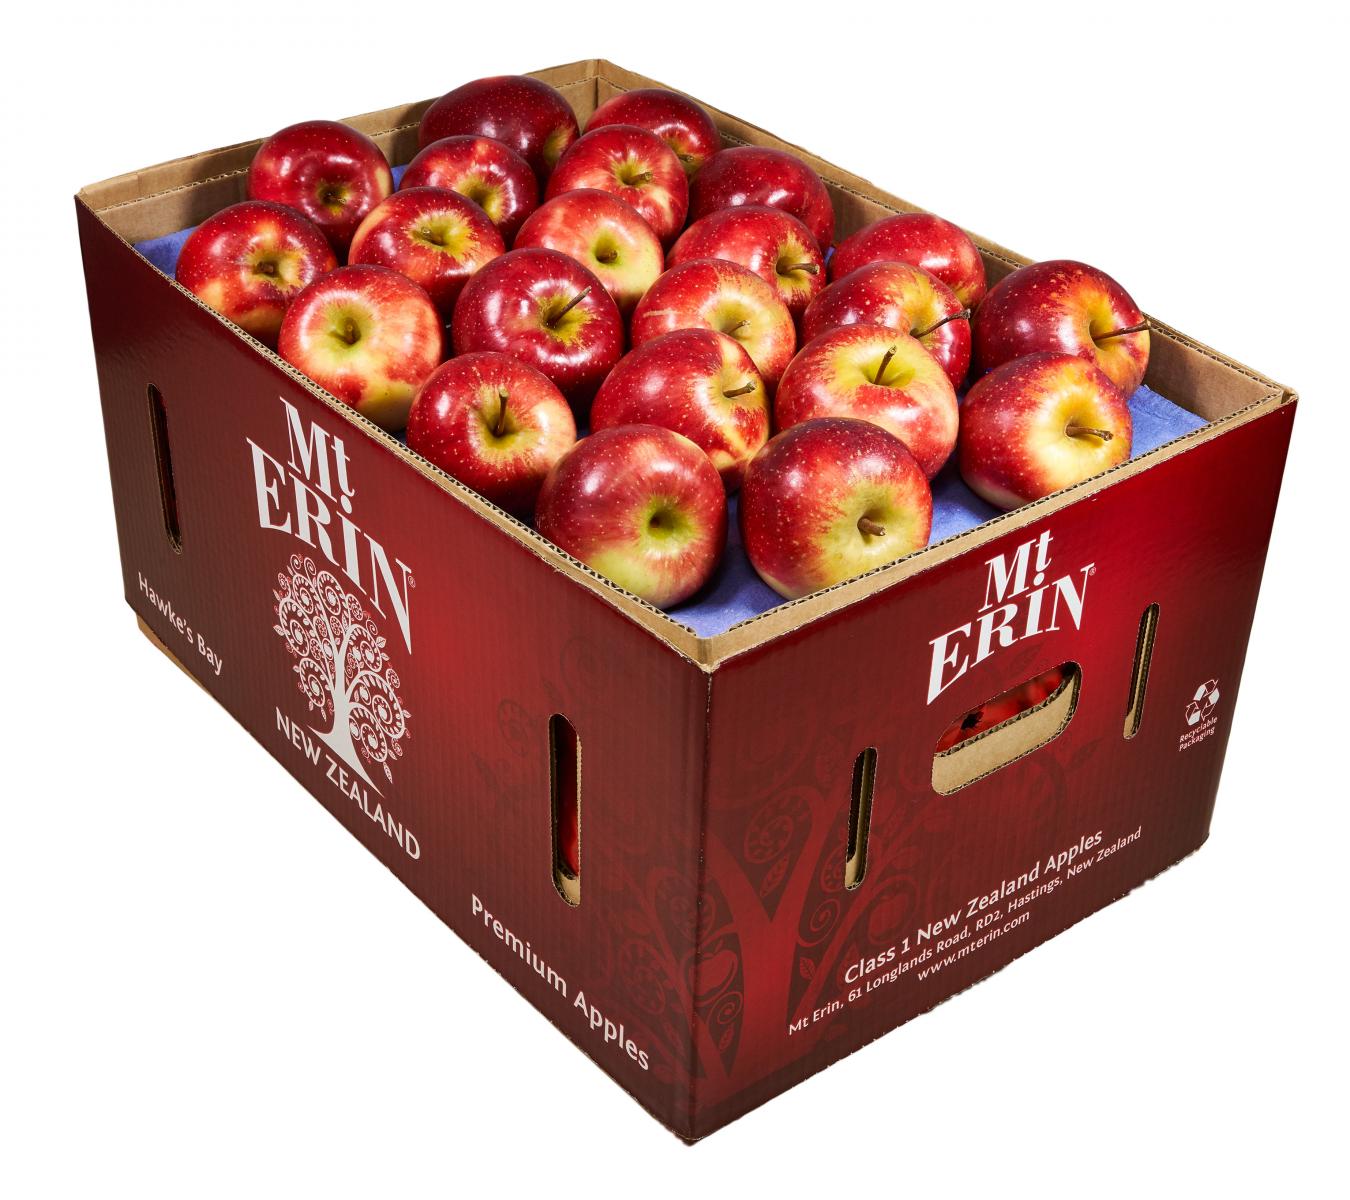 Fruit wholesale - Mt Erin New Zealand Apples - NZ Queen